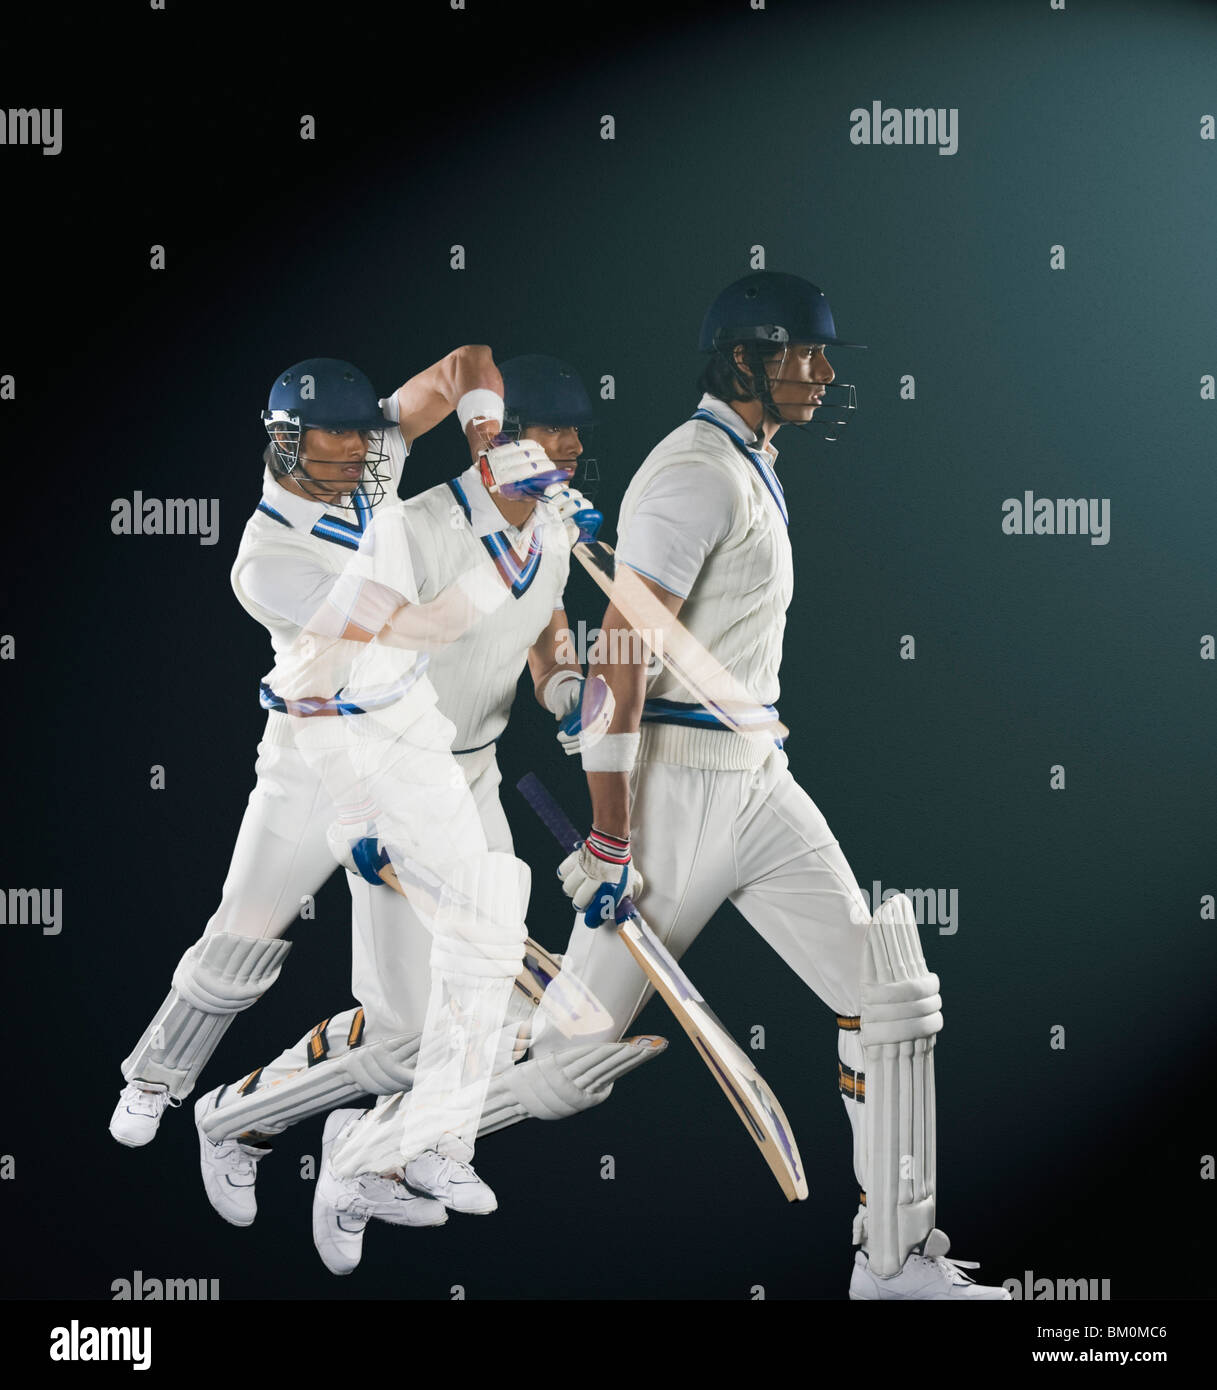 Plusieurs image d'un batteur de cricket Banque D'Images